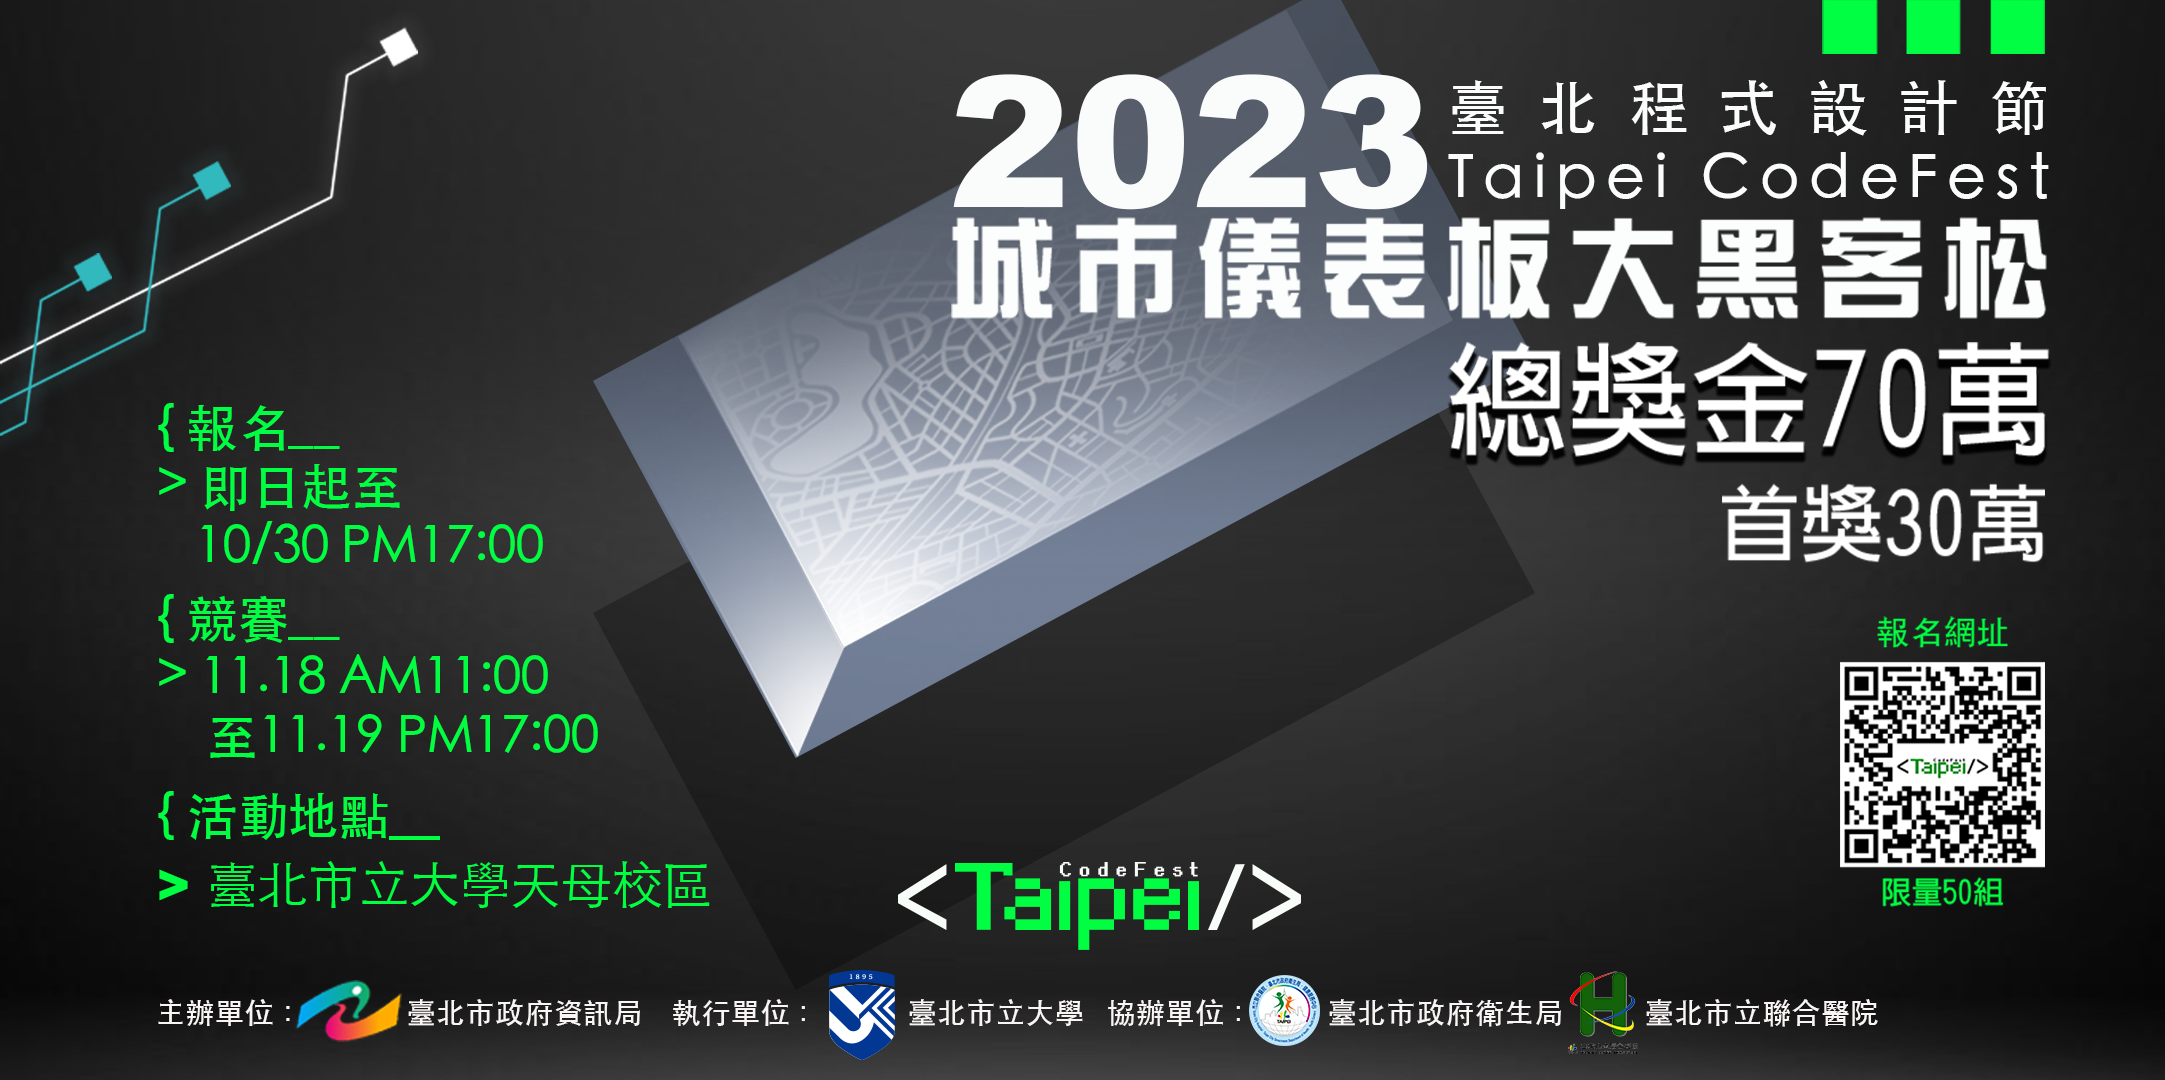 「2023臺北程式設計節 - 城市儀表板大黑客松」報名資訊